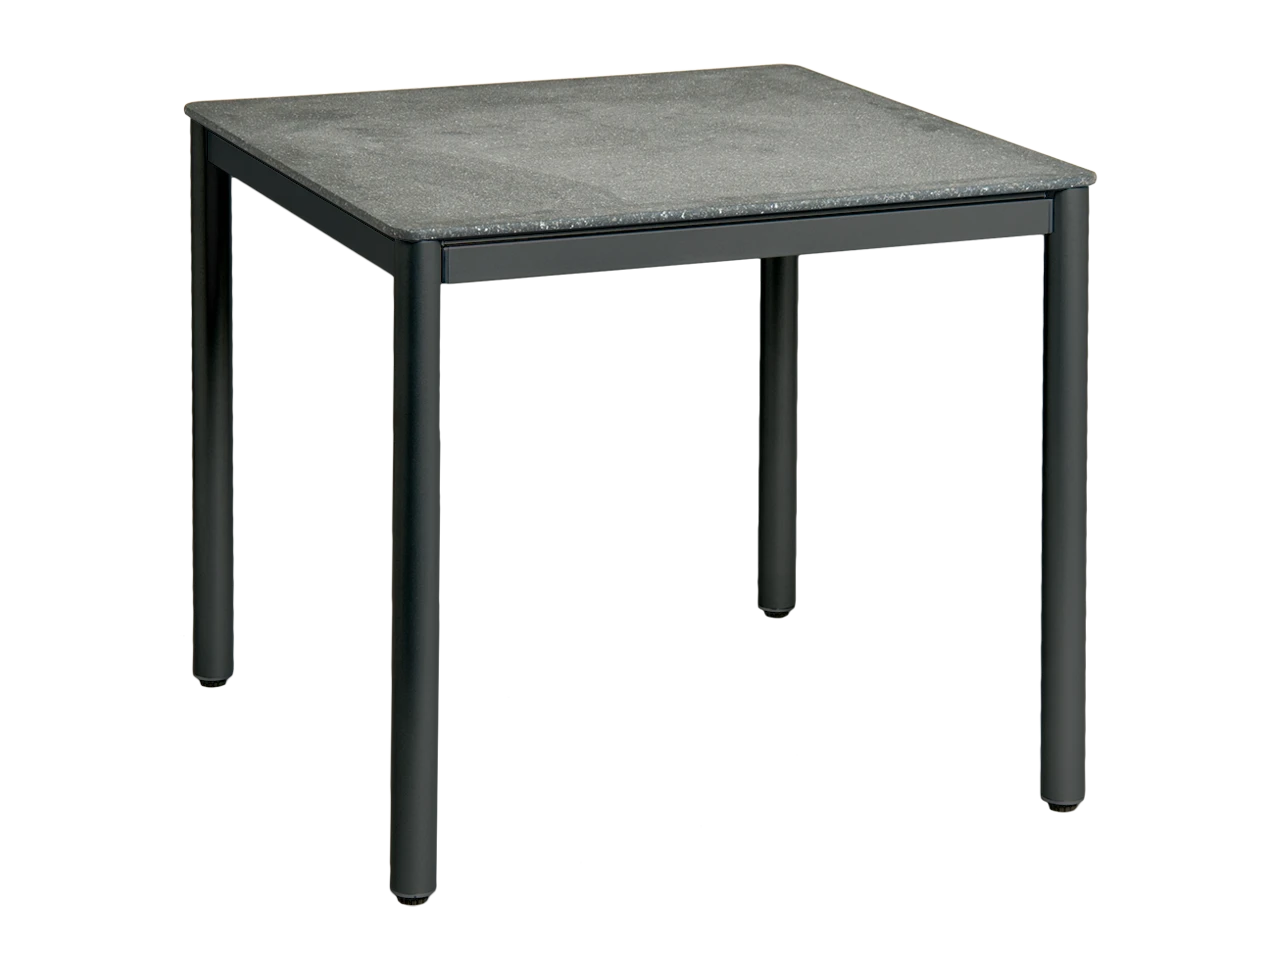 Portofino Stone Top Table 0.8m